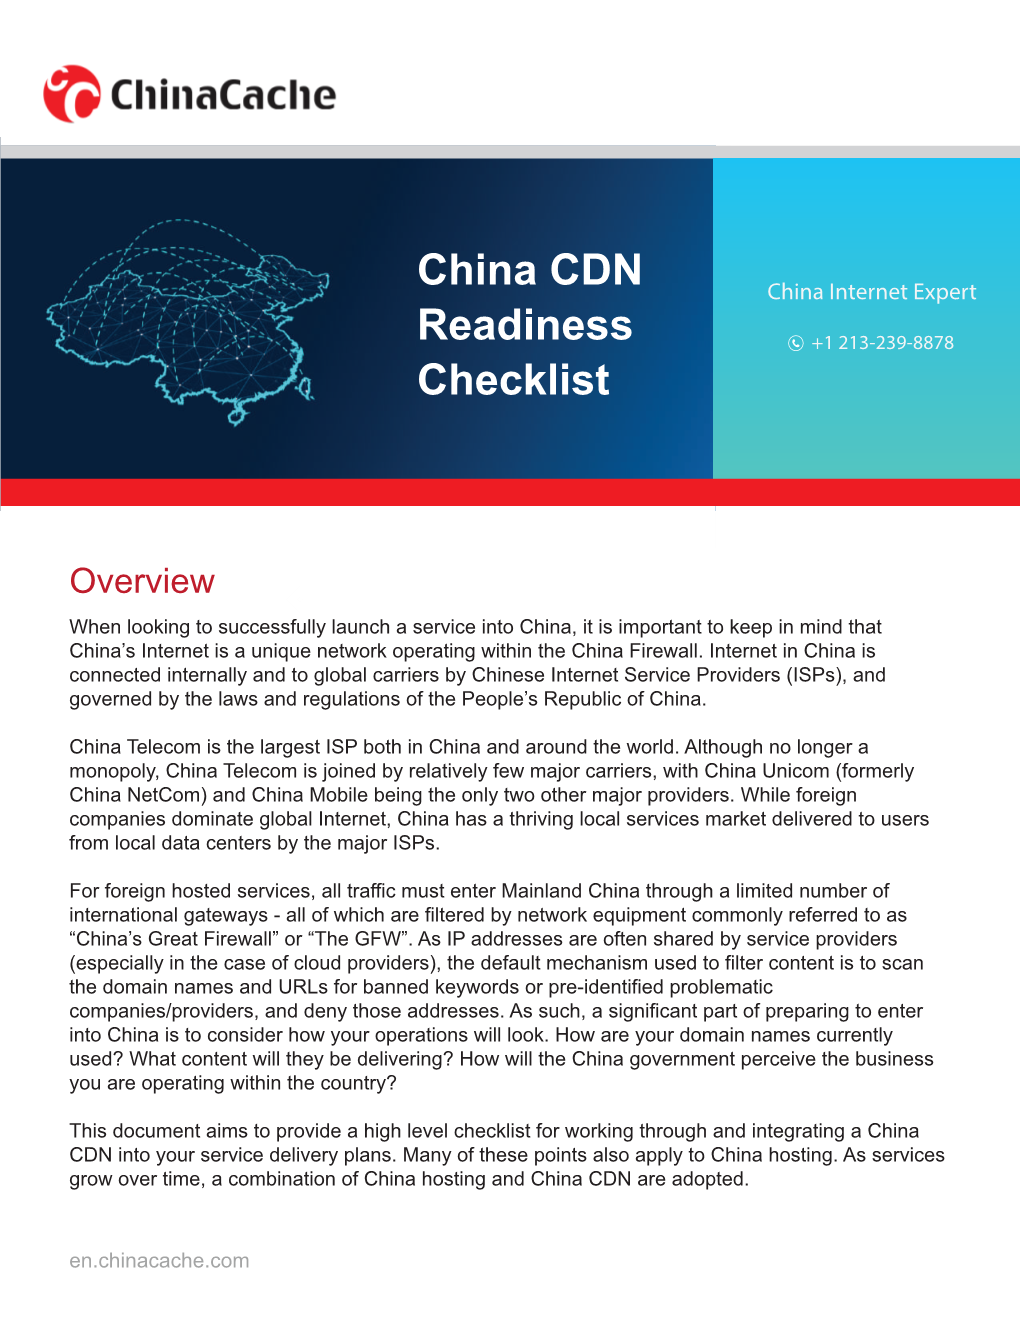 China CDN Readiness Checklist V1